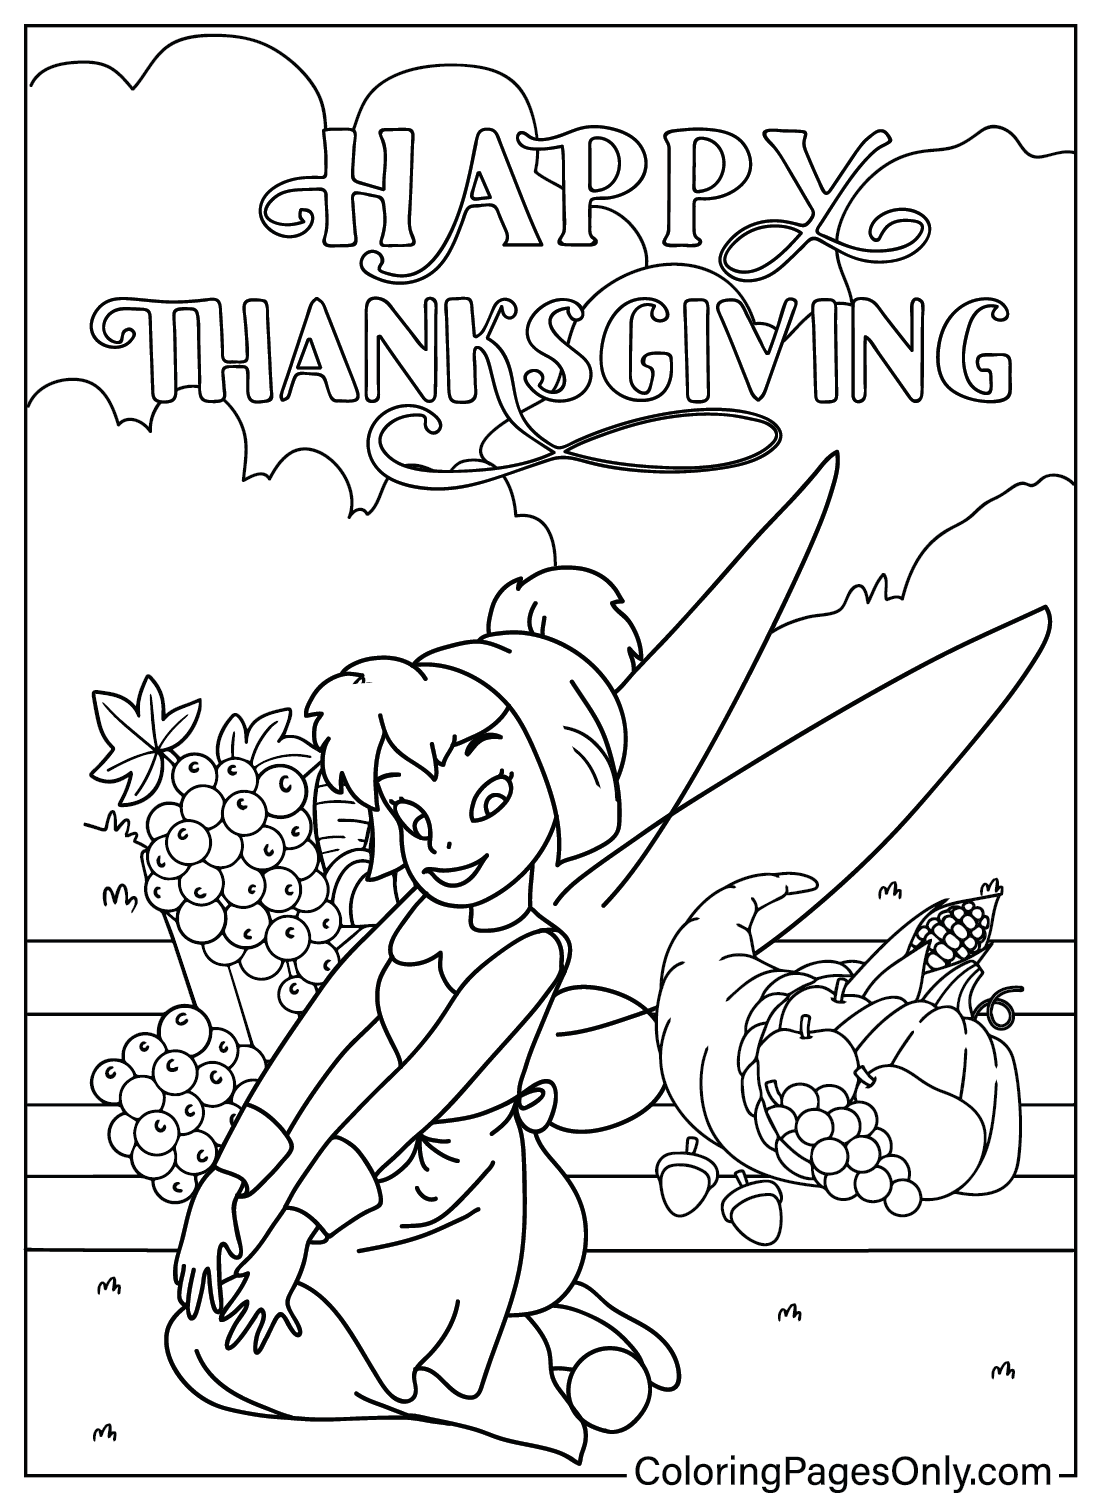 Página para colorear de Acción de Gracias de Disney Tinker Bell de Estoy agradecido por